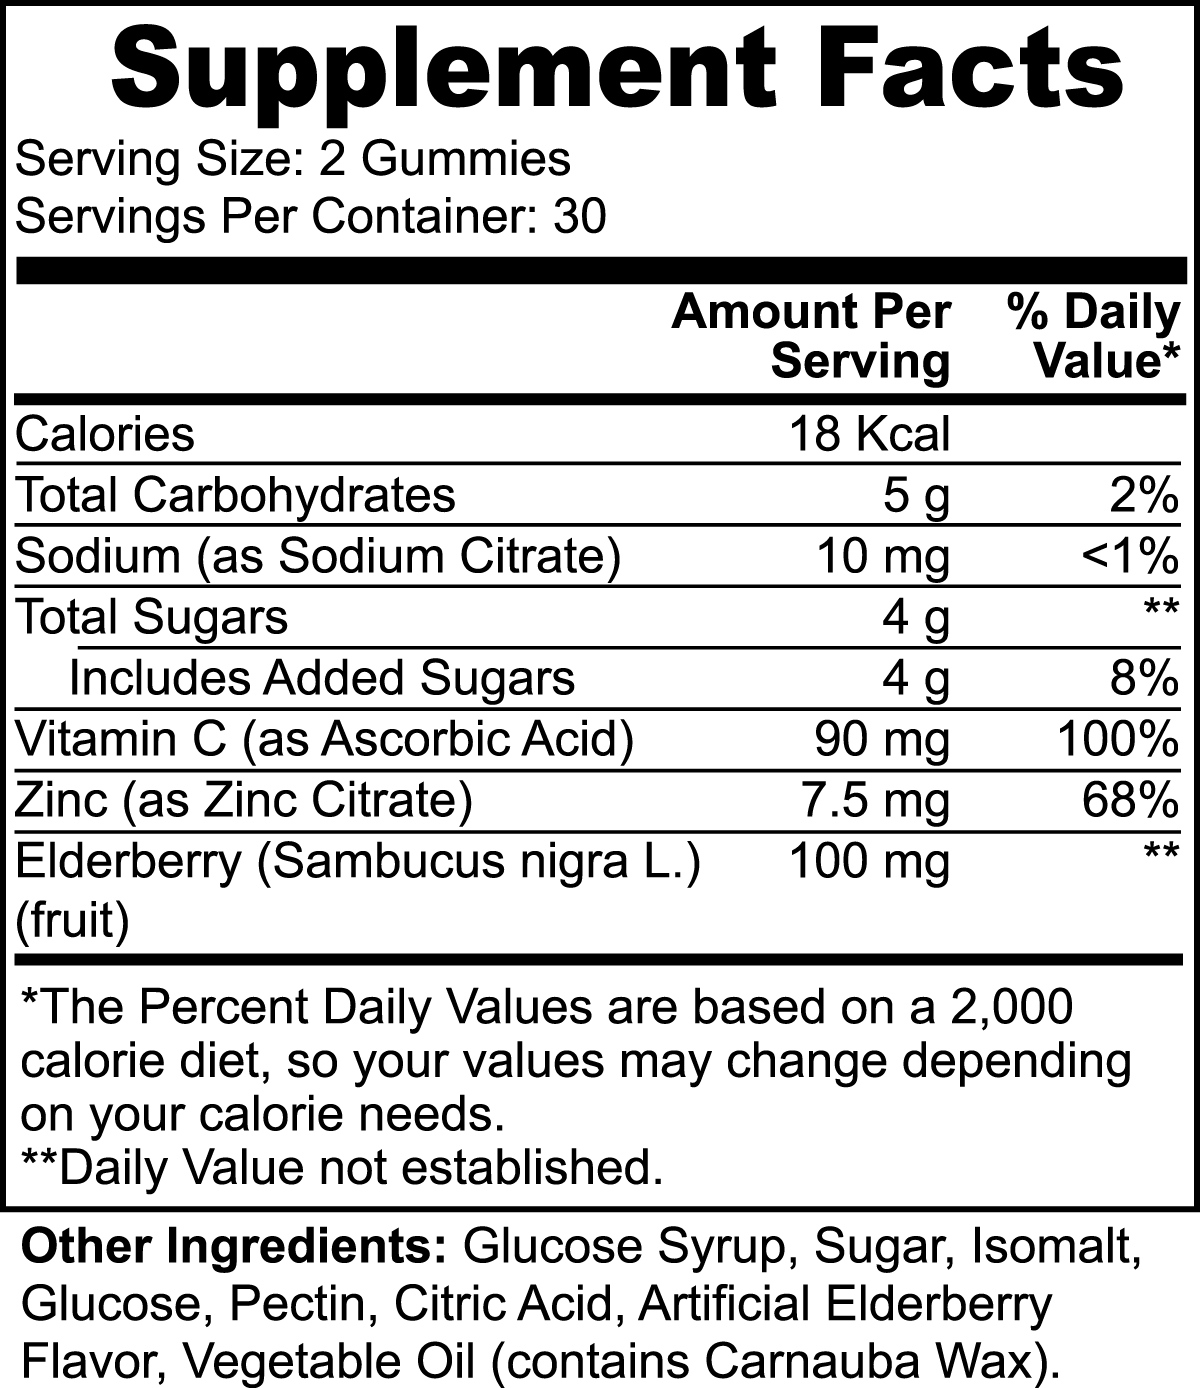 Elderberry & Vitamin C Gummies (60 count) - Immune Care